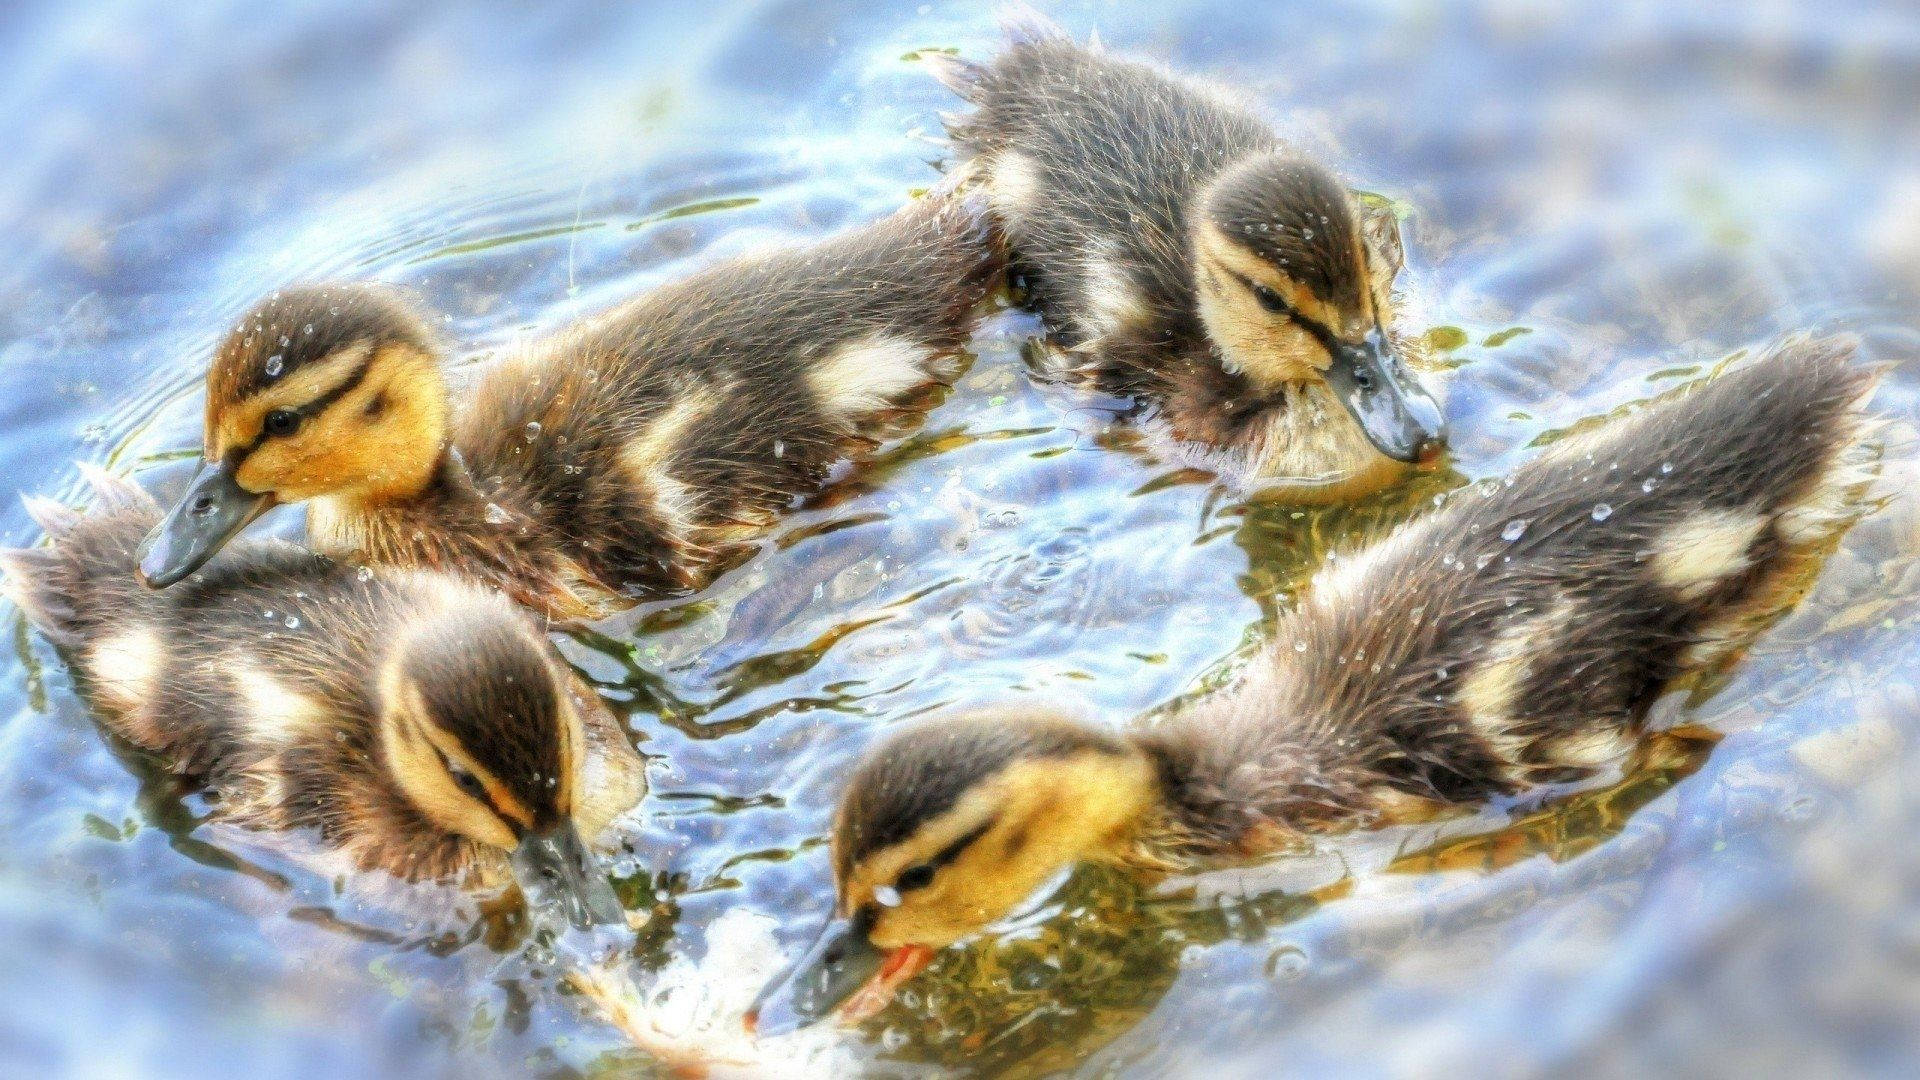 Shiny Baby Ducks